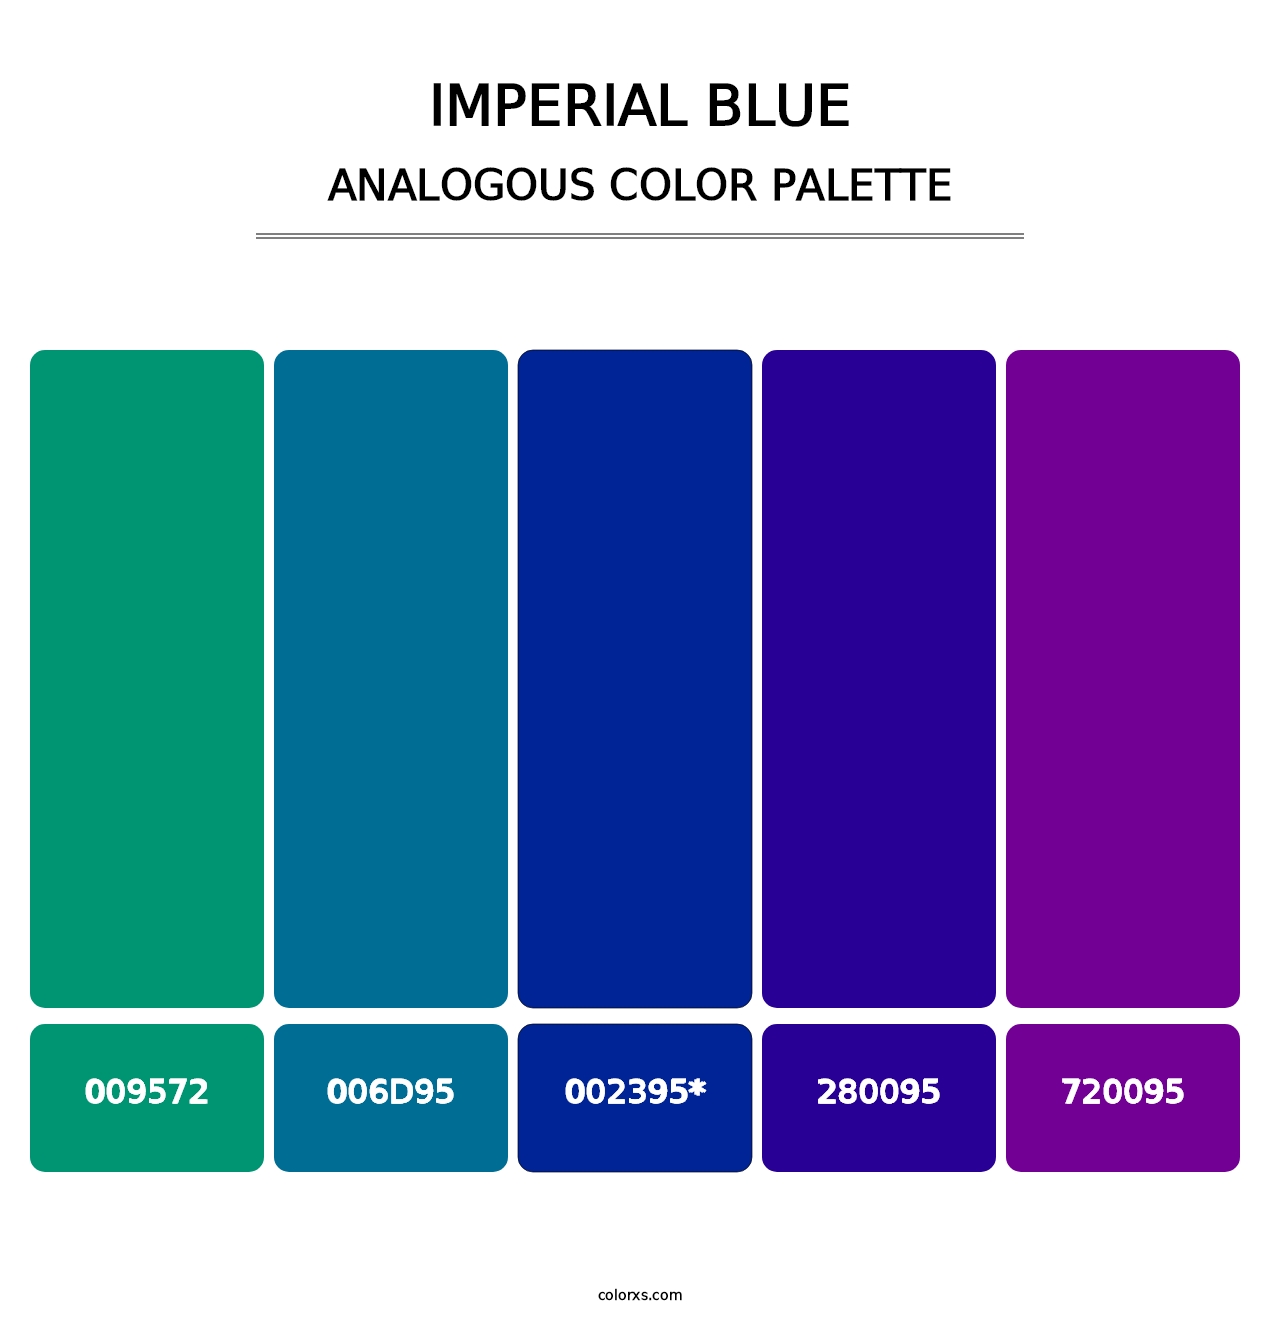 Imperial Blue - Analogous Color Palette